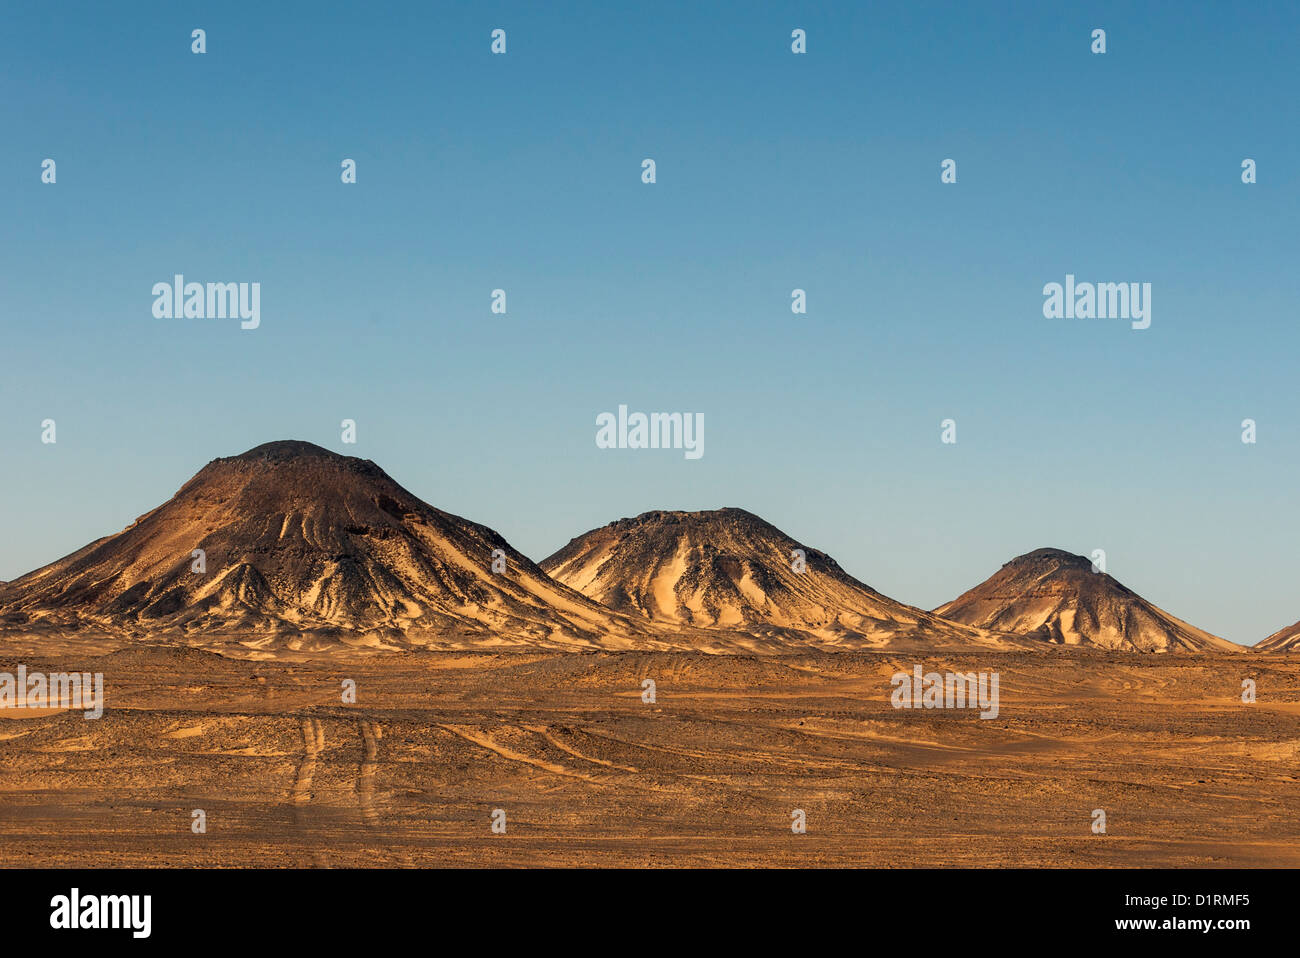 Volcano-shaped Mountains of Black Desert, Egypt Stock Photo